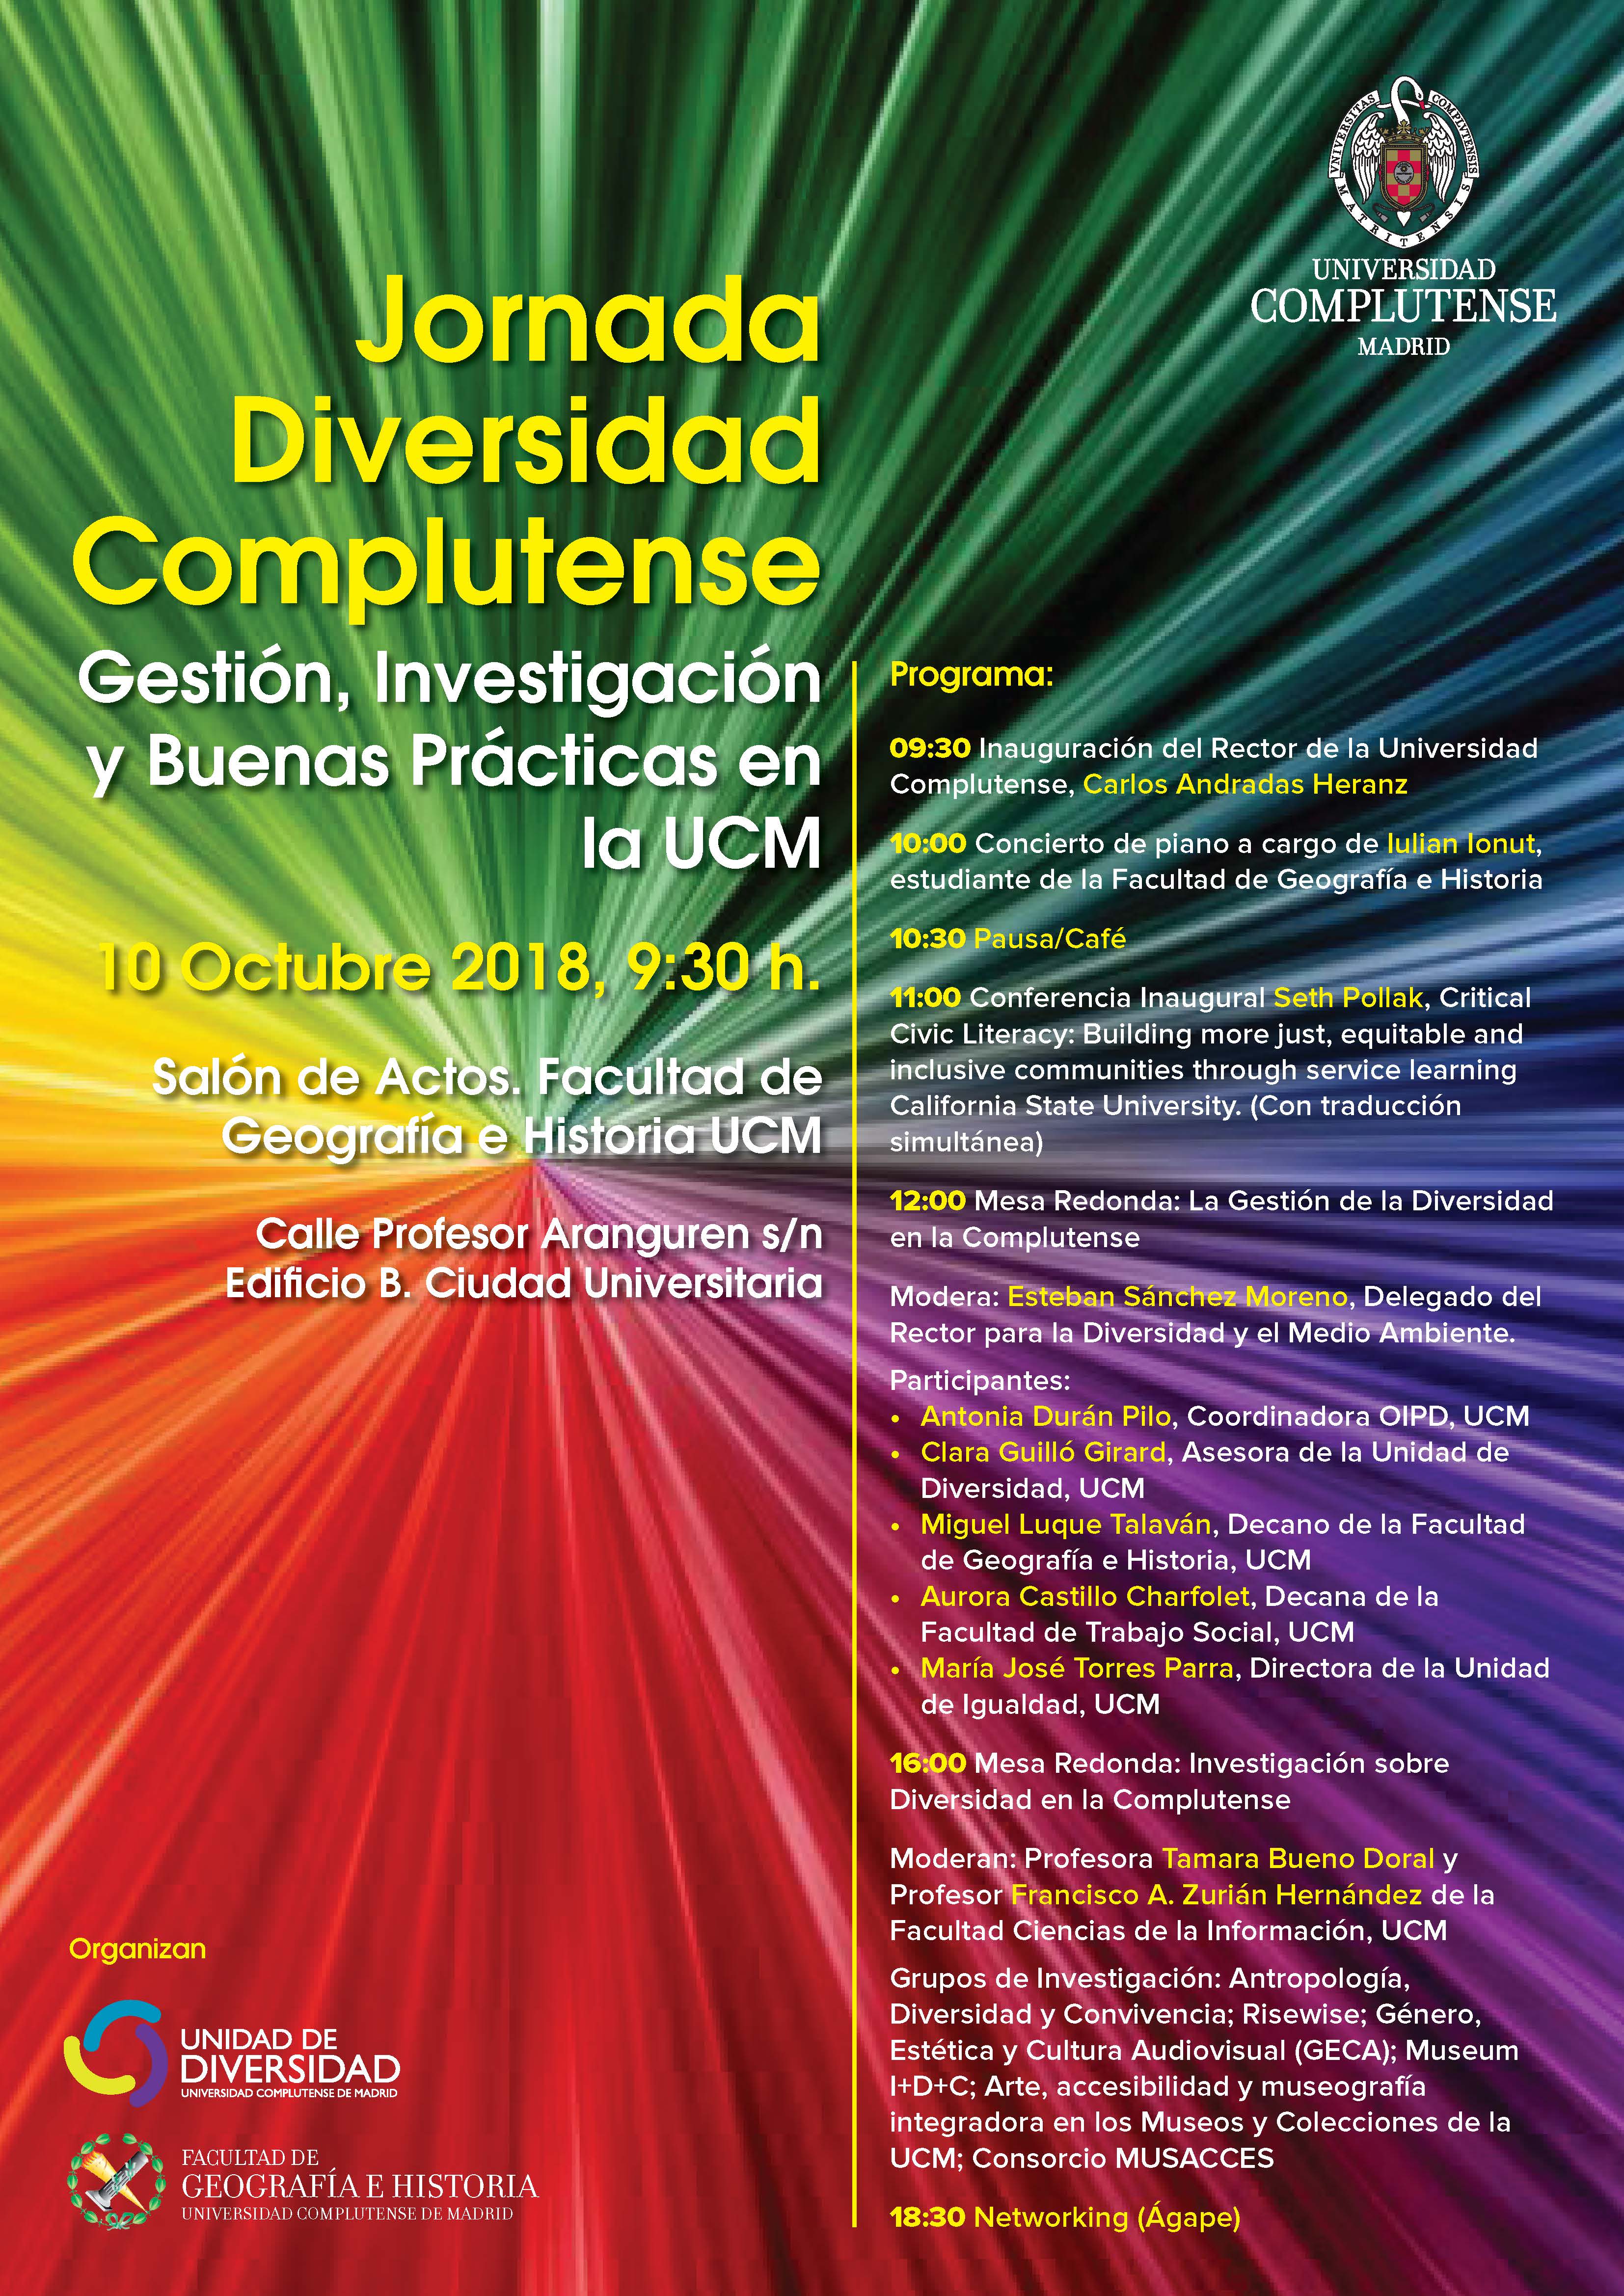 Jornada Diversidad Complutense: Gestión, Investigación y Buenas Prácticas en la UCM (Miércoles, 10 de octubre) - 1